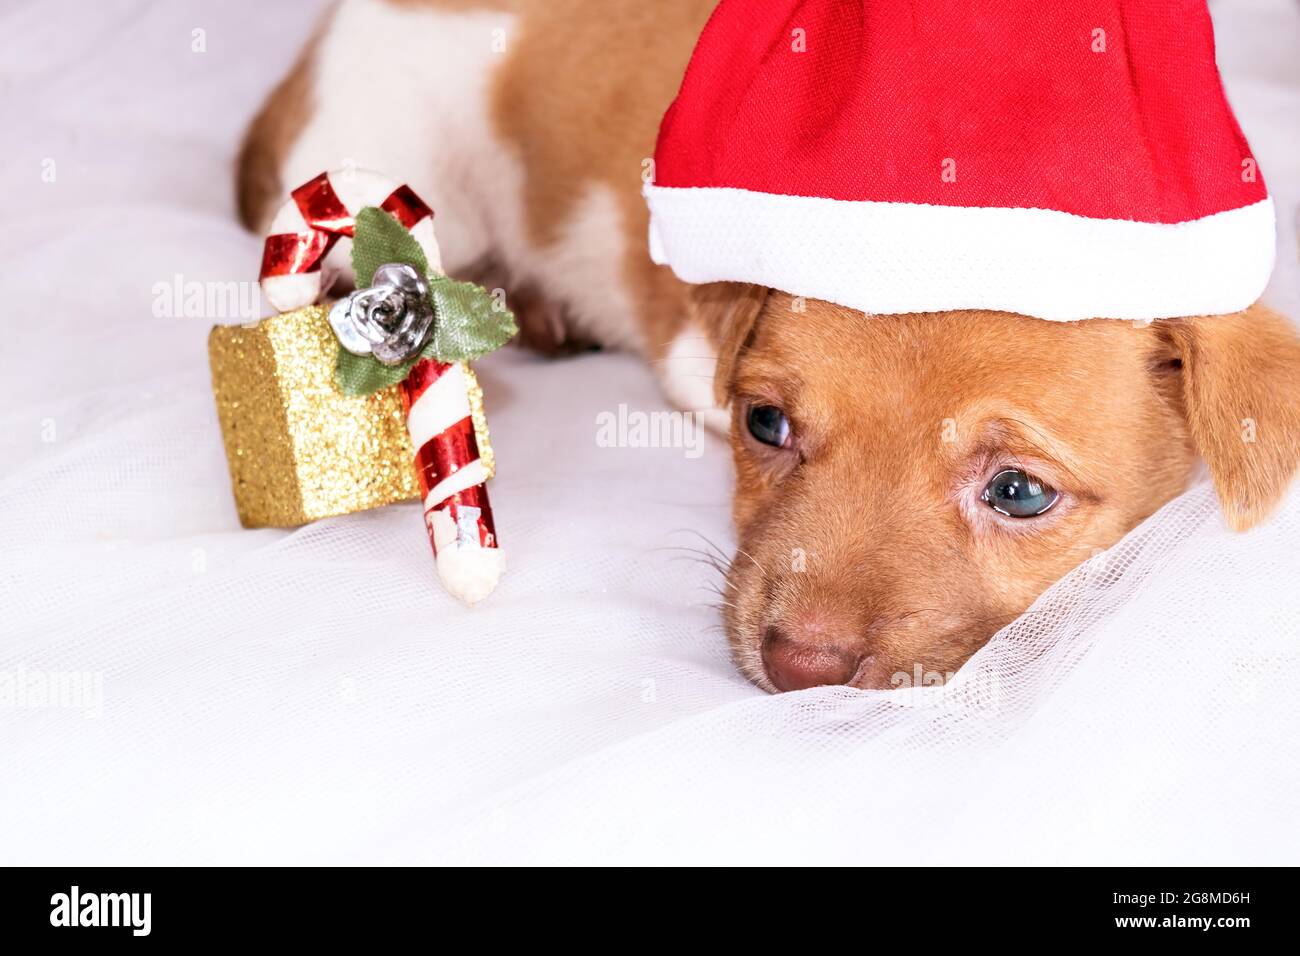 Un chiot de demi-race au look triste portant une casquette de Noël faite maison tout en étant allongé sur un tissu blanc, il y a une petite décoration de Noël à côté Banque D'Images